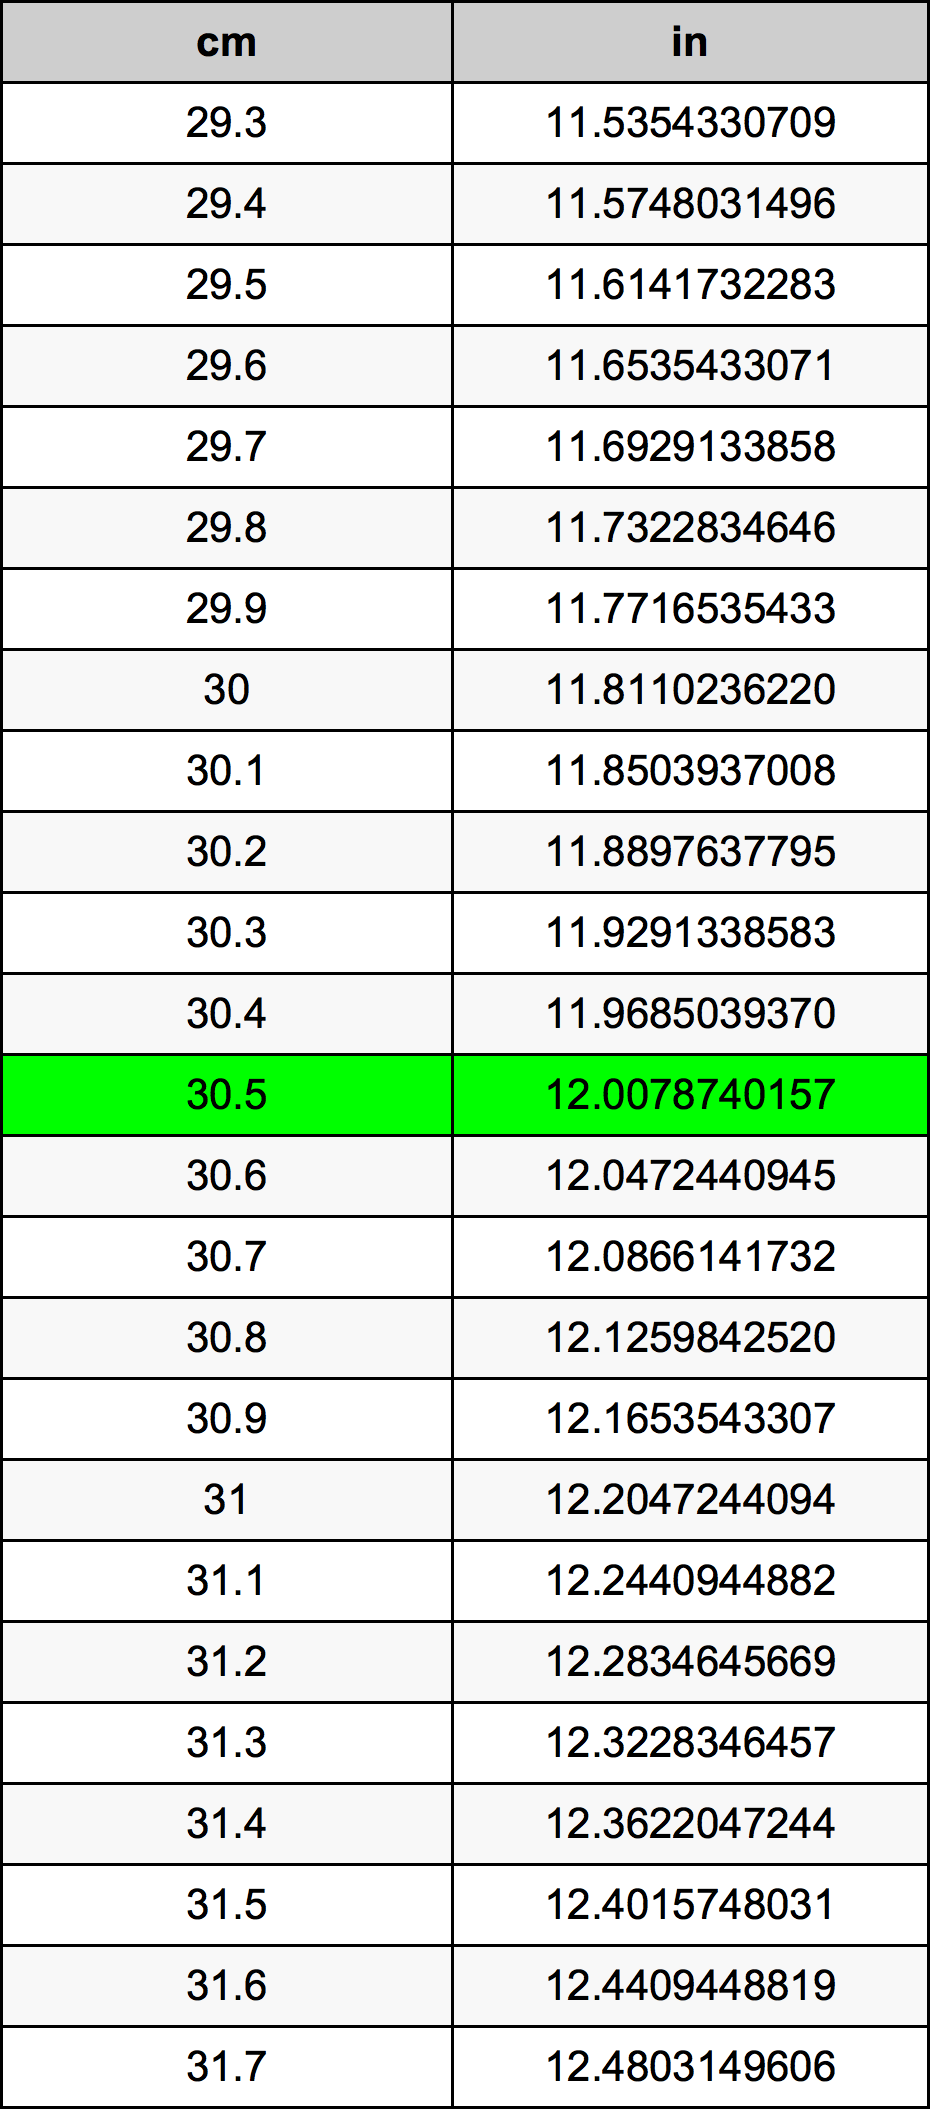 30.5 Centiméter átszámítási táblázat